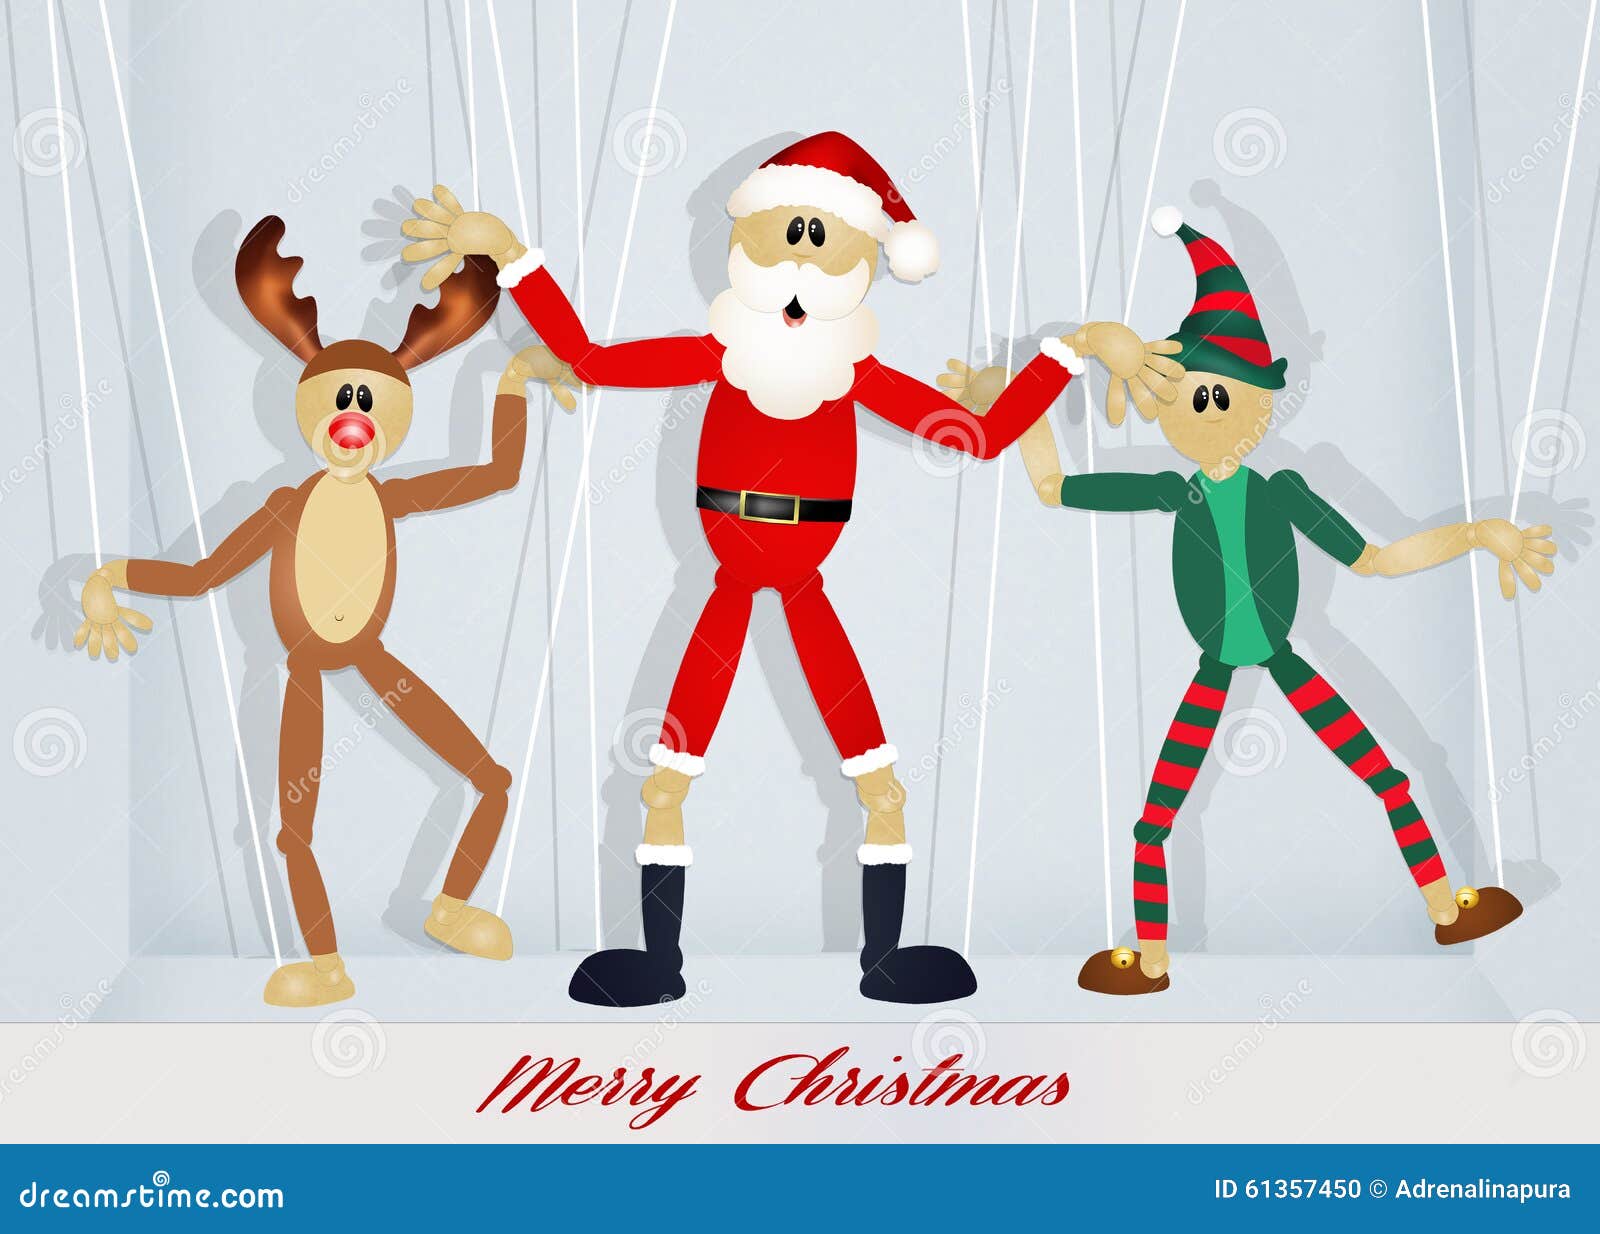 Compartir 36+ imagen marioneta de navidad